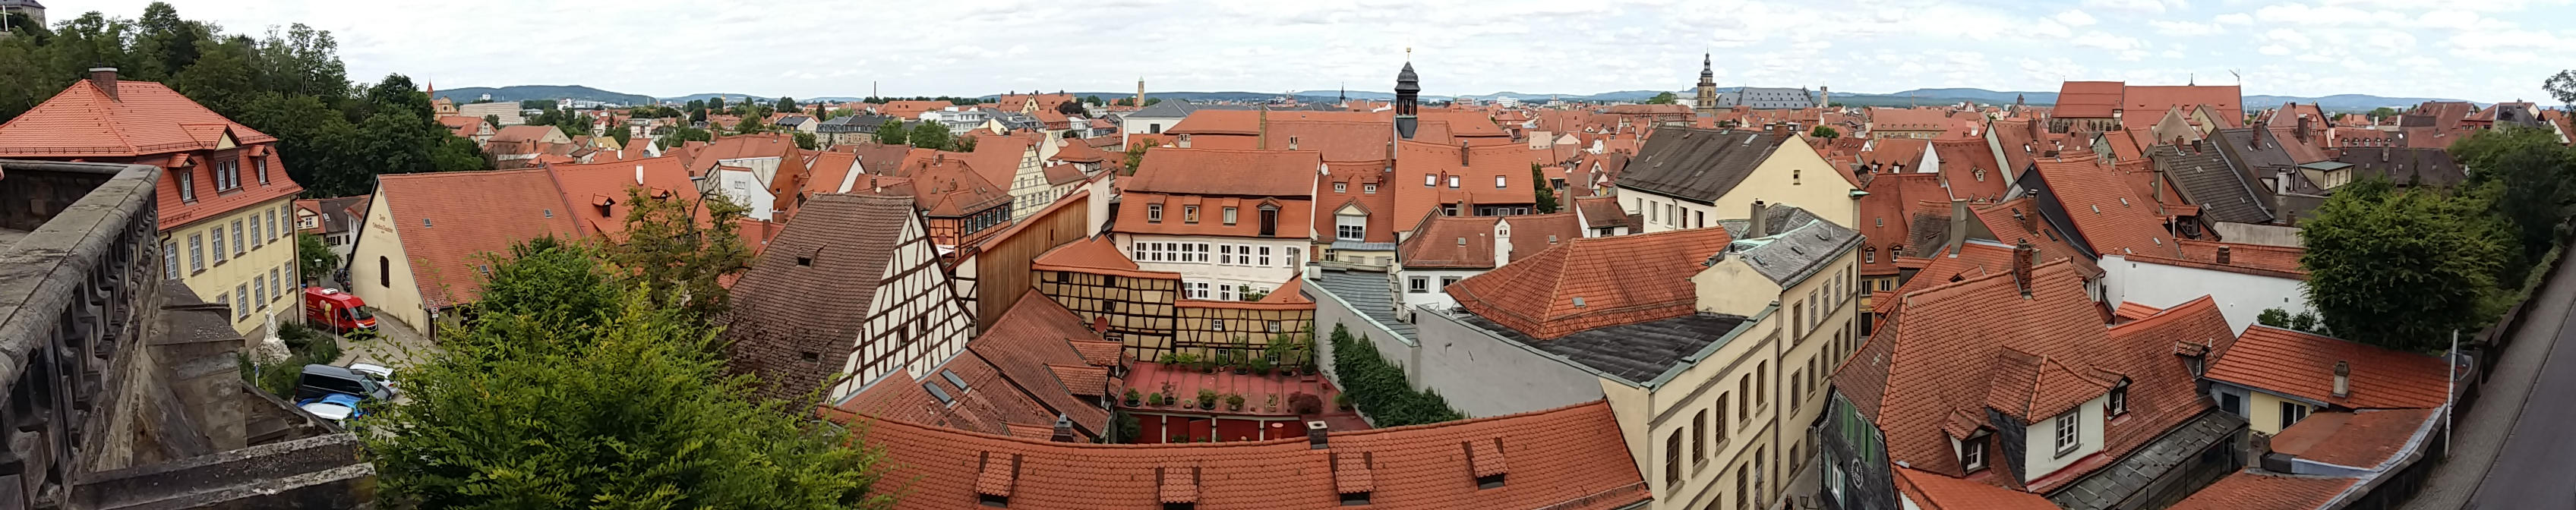 Bamberger Altstadt - Blick von der Residenz